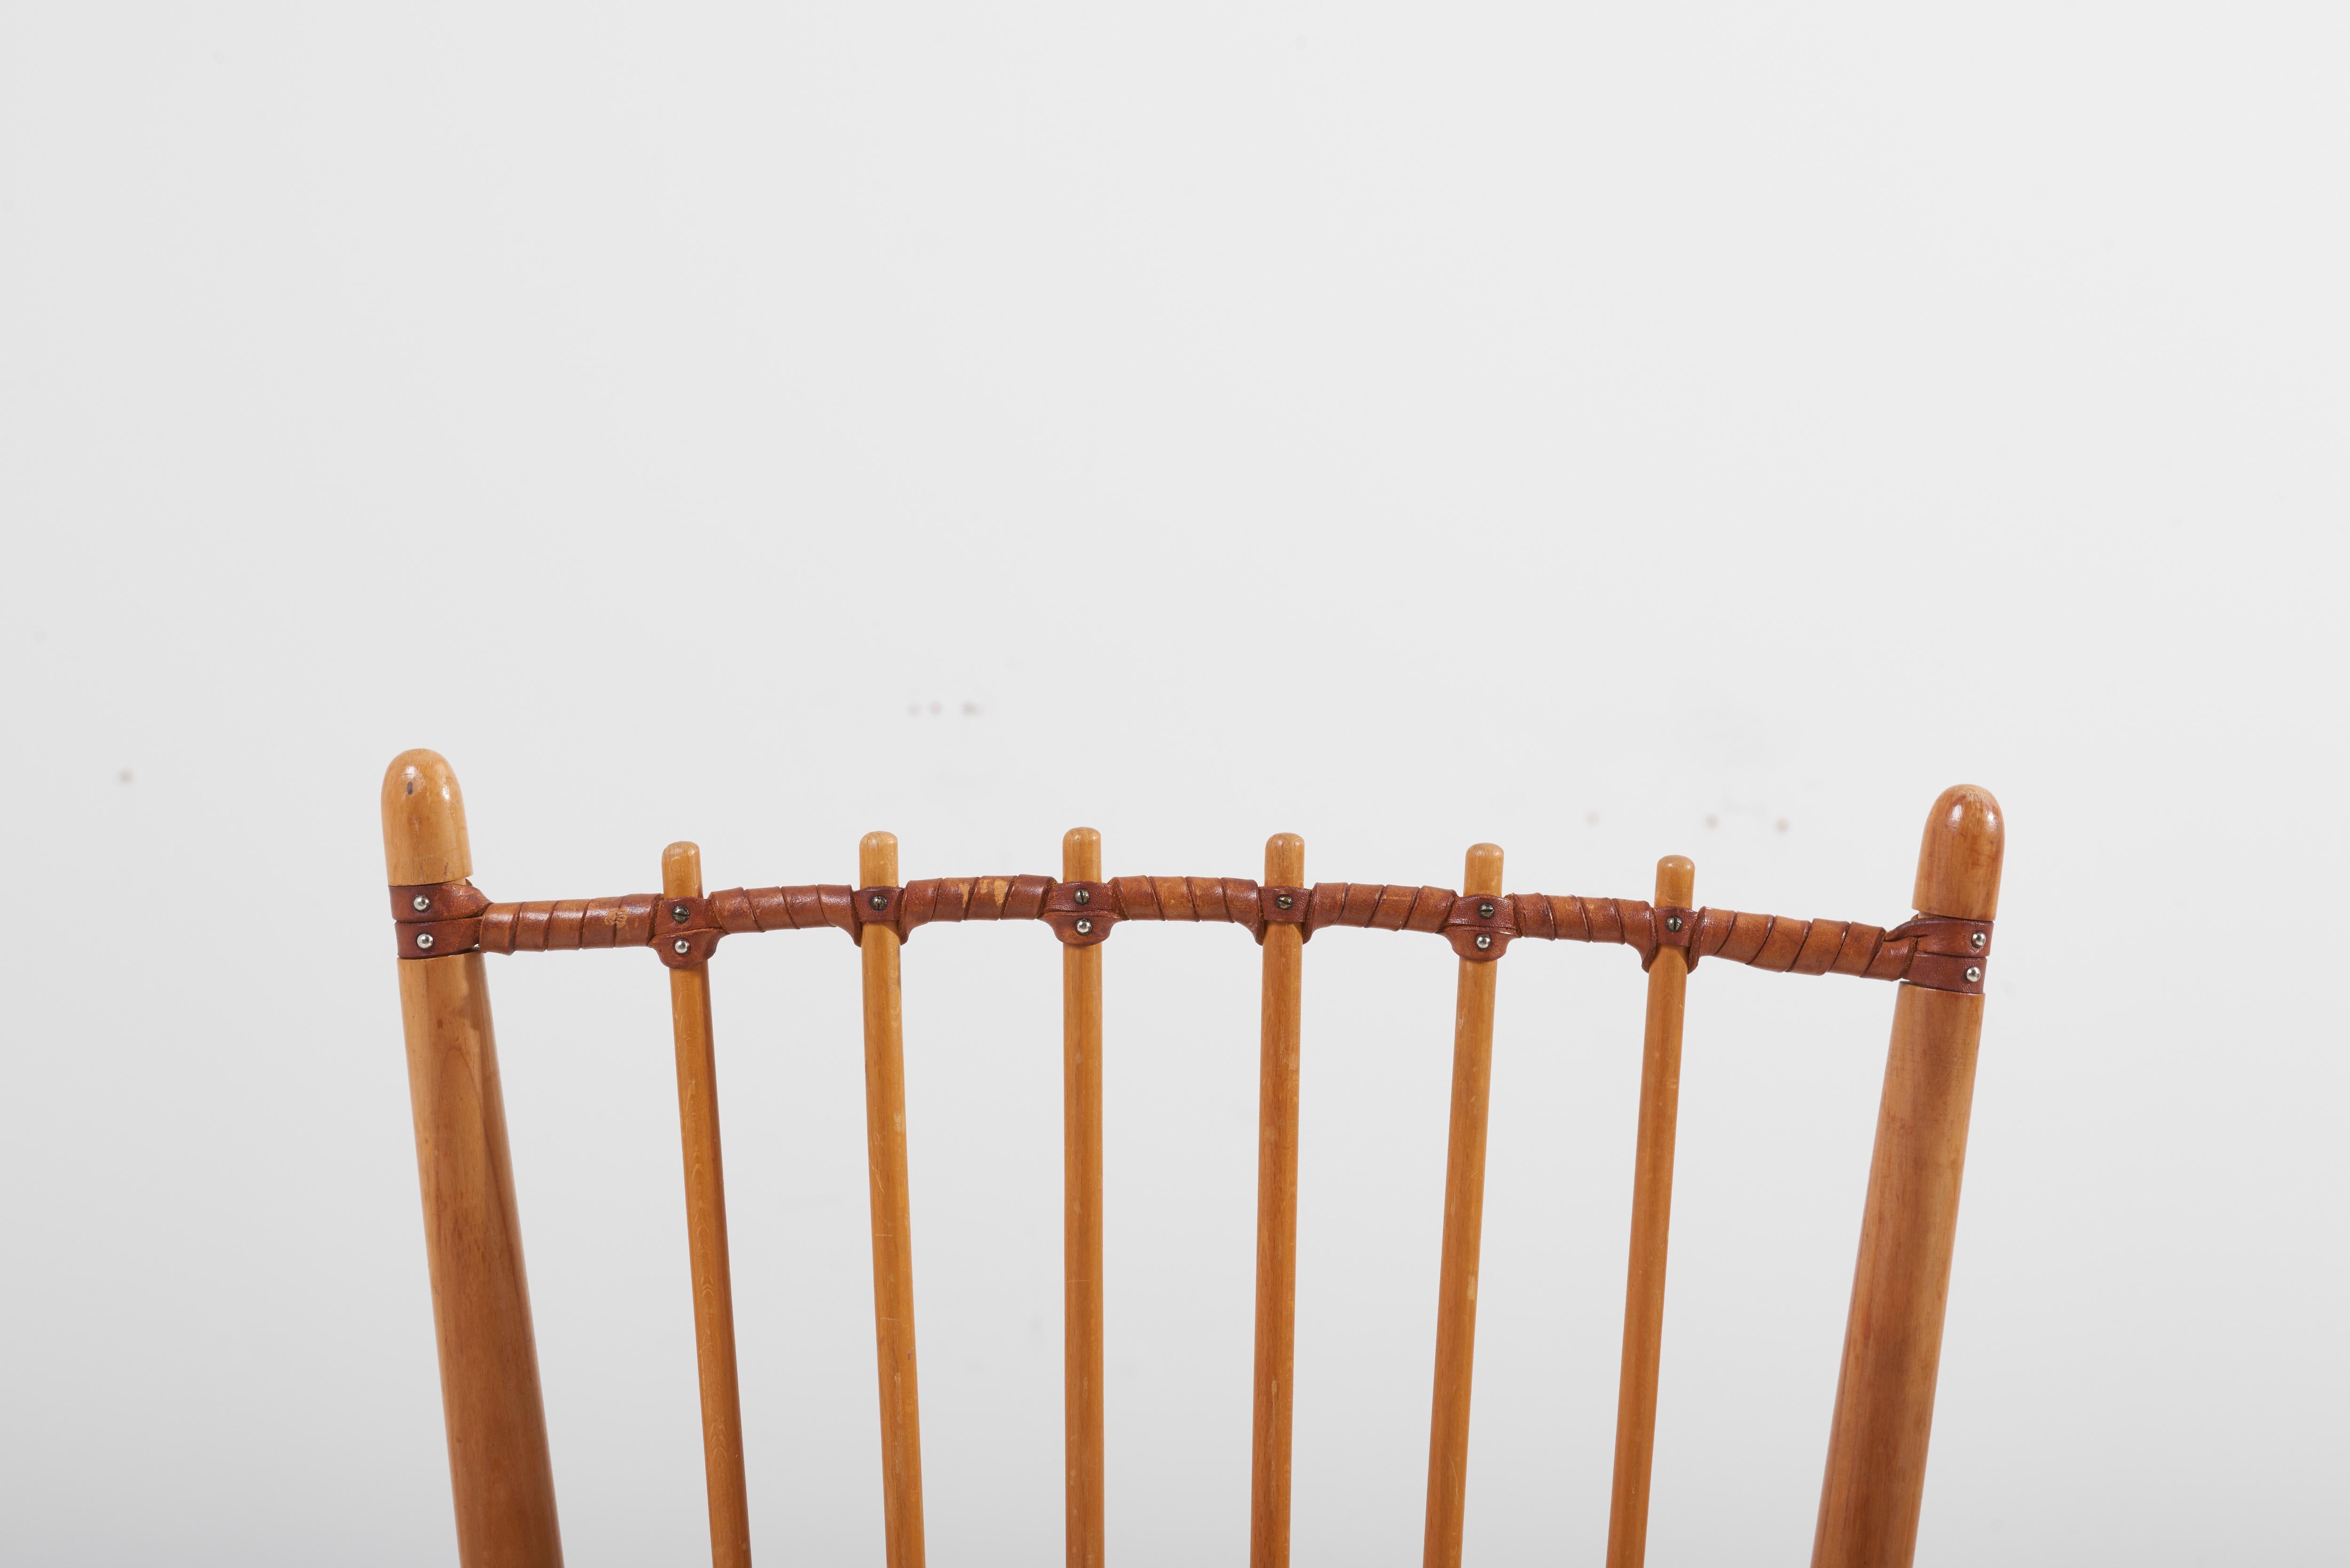 Paire de chaises de salle à manger en bois, conçues dans les années 1950 par Albert Haberer et fabriquées par Hermann Fleiner.
Le lien en cuir entre les fuseaux est un beau détail qui confère au dossier à la fois solidité et souplesse. Fabrication